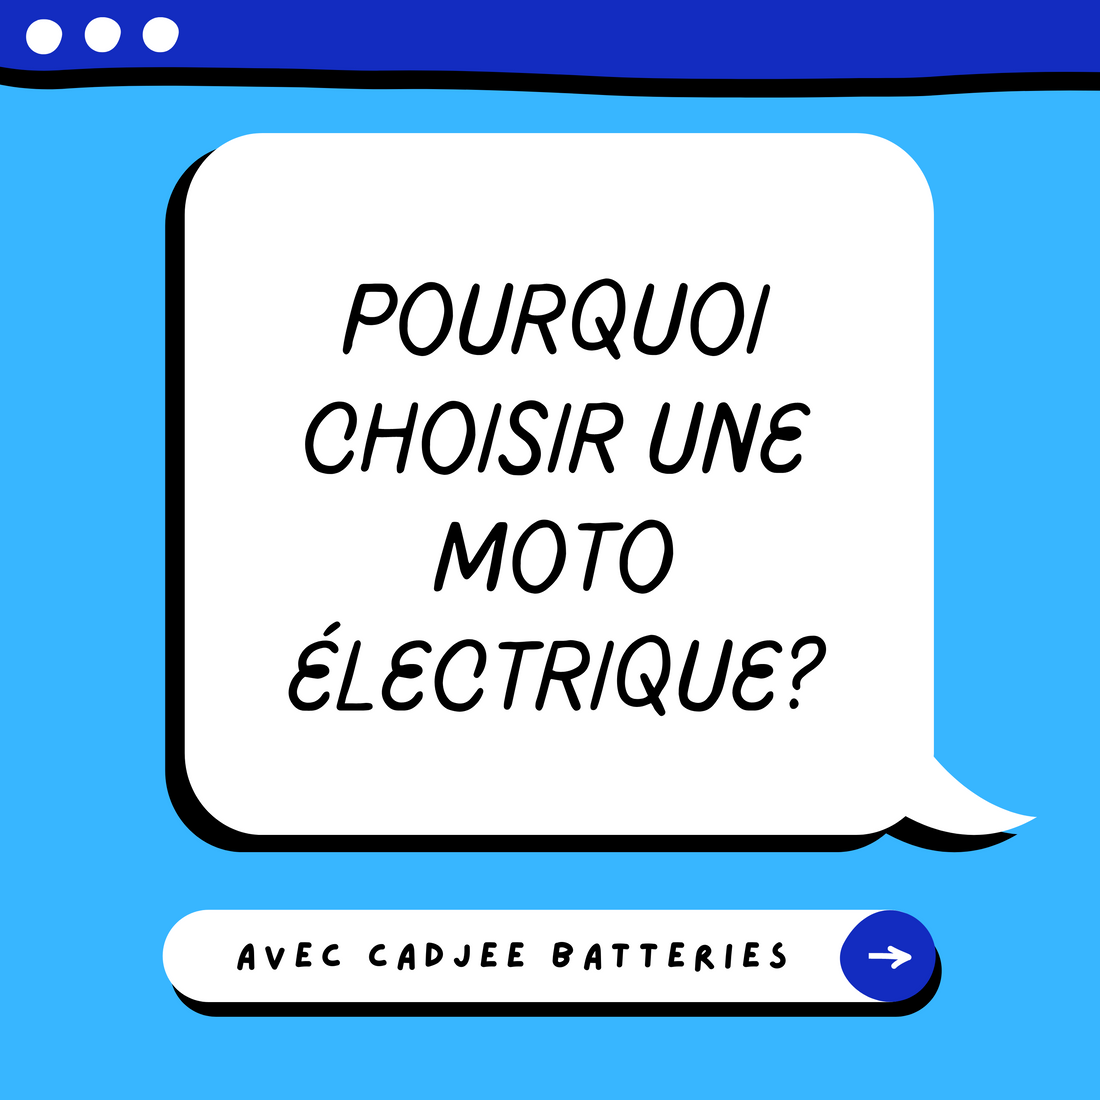 Pourquoi choisir une moto électrique?